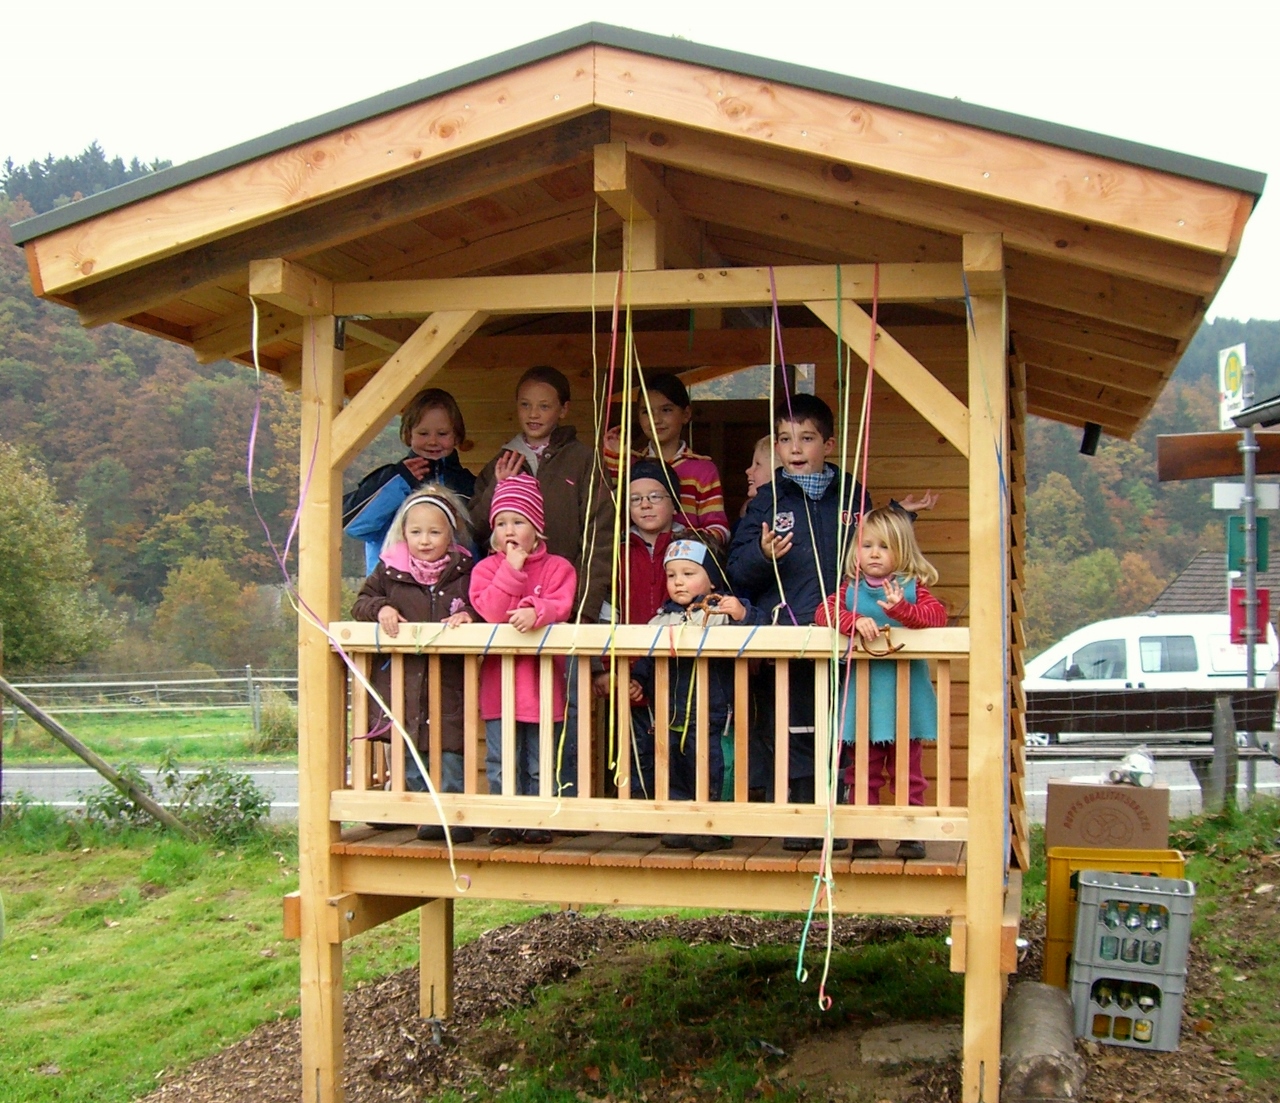 Das Spielhaus auf dem Spielplatz in Seelbach mit vielen Kindern